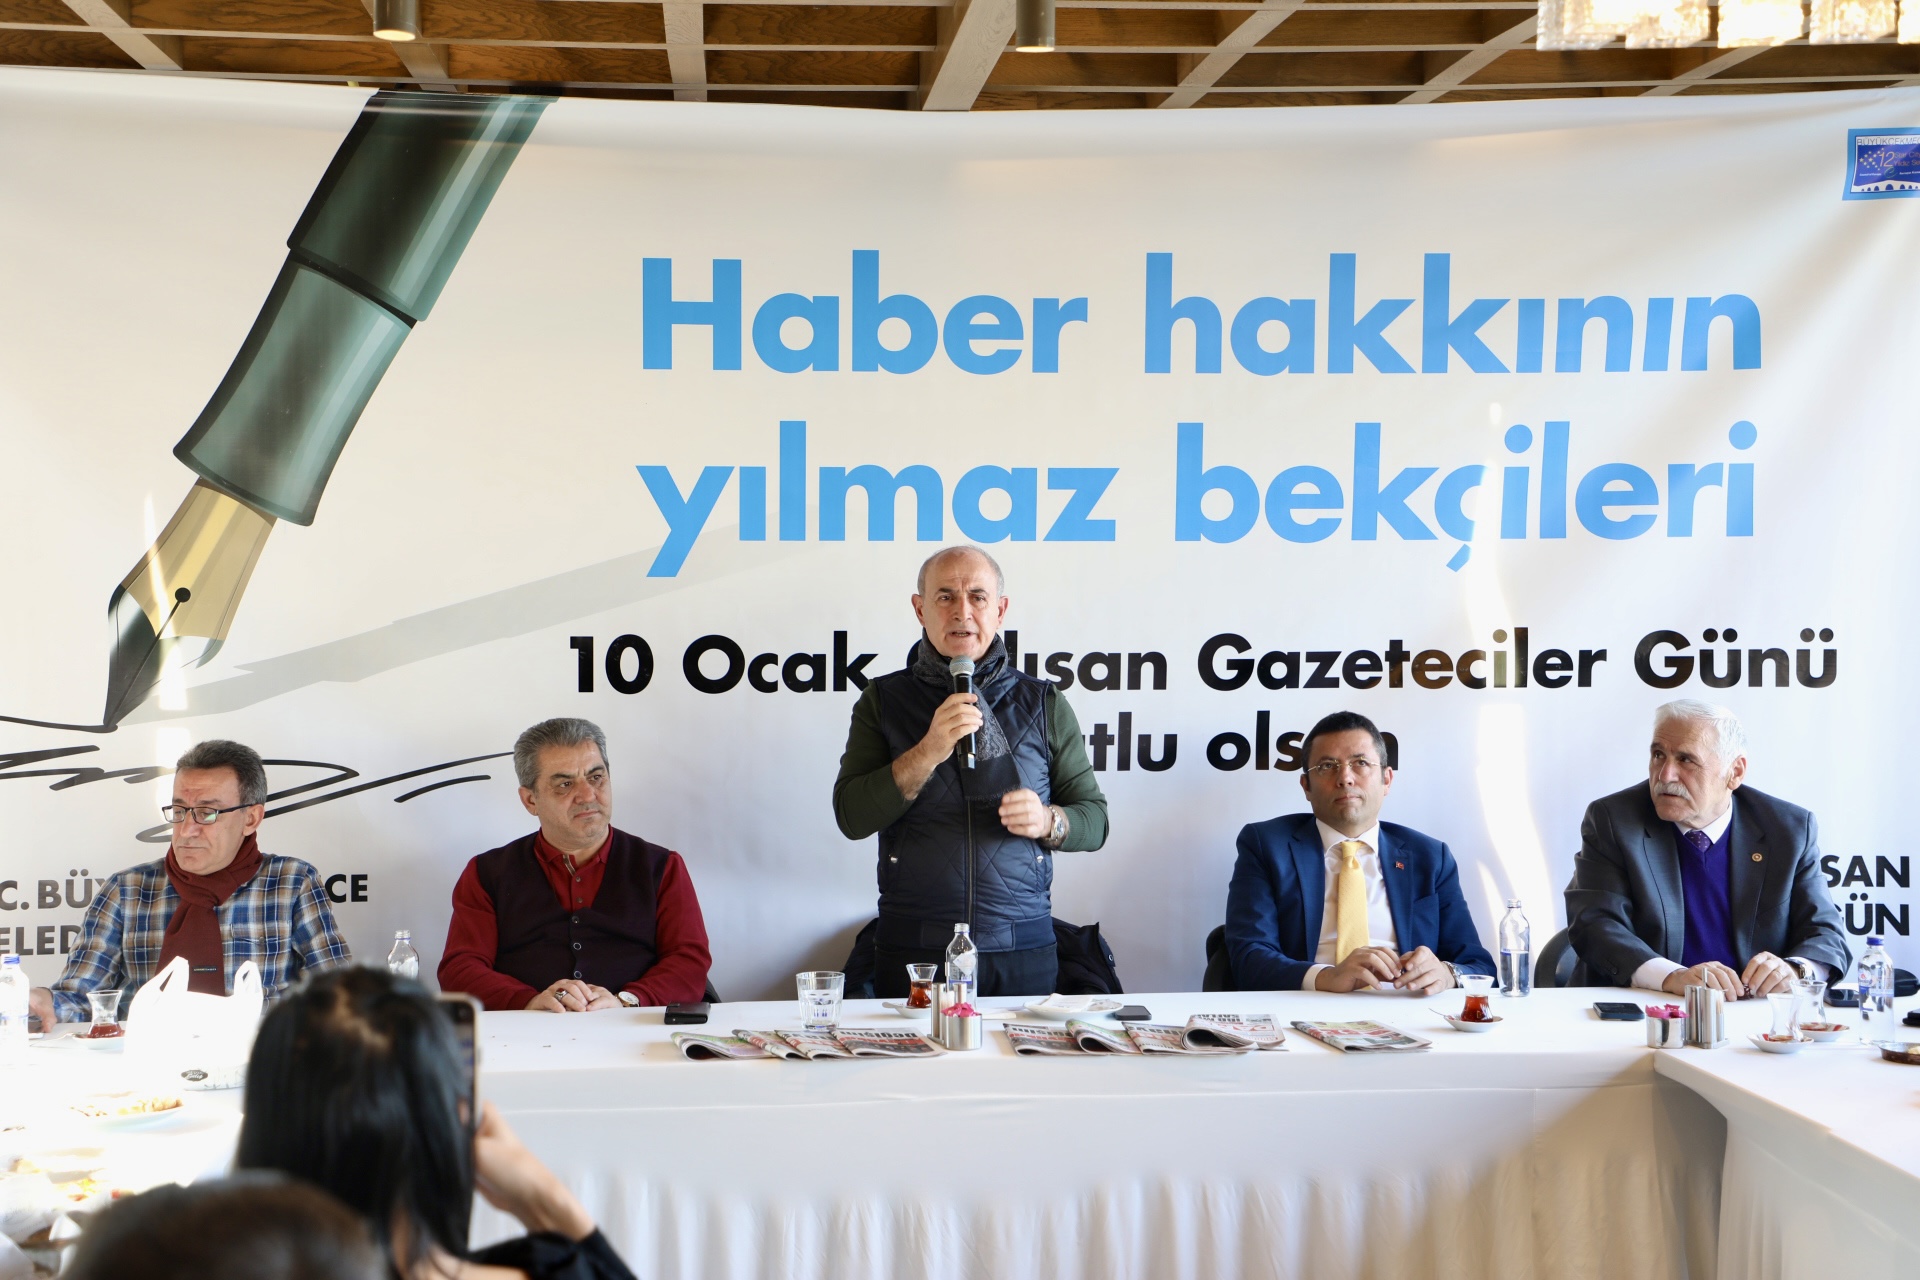 Başkan Akgün, çalışan gazetecilerin gününü kutladı